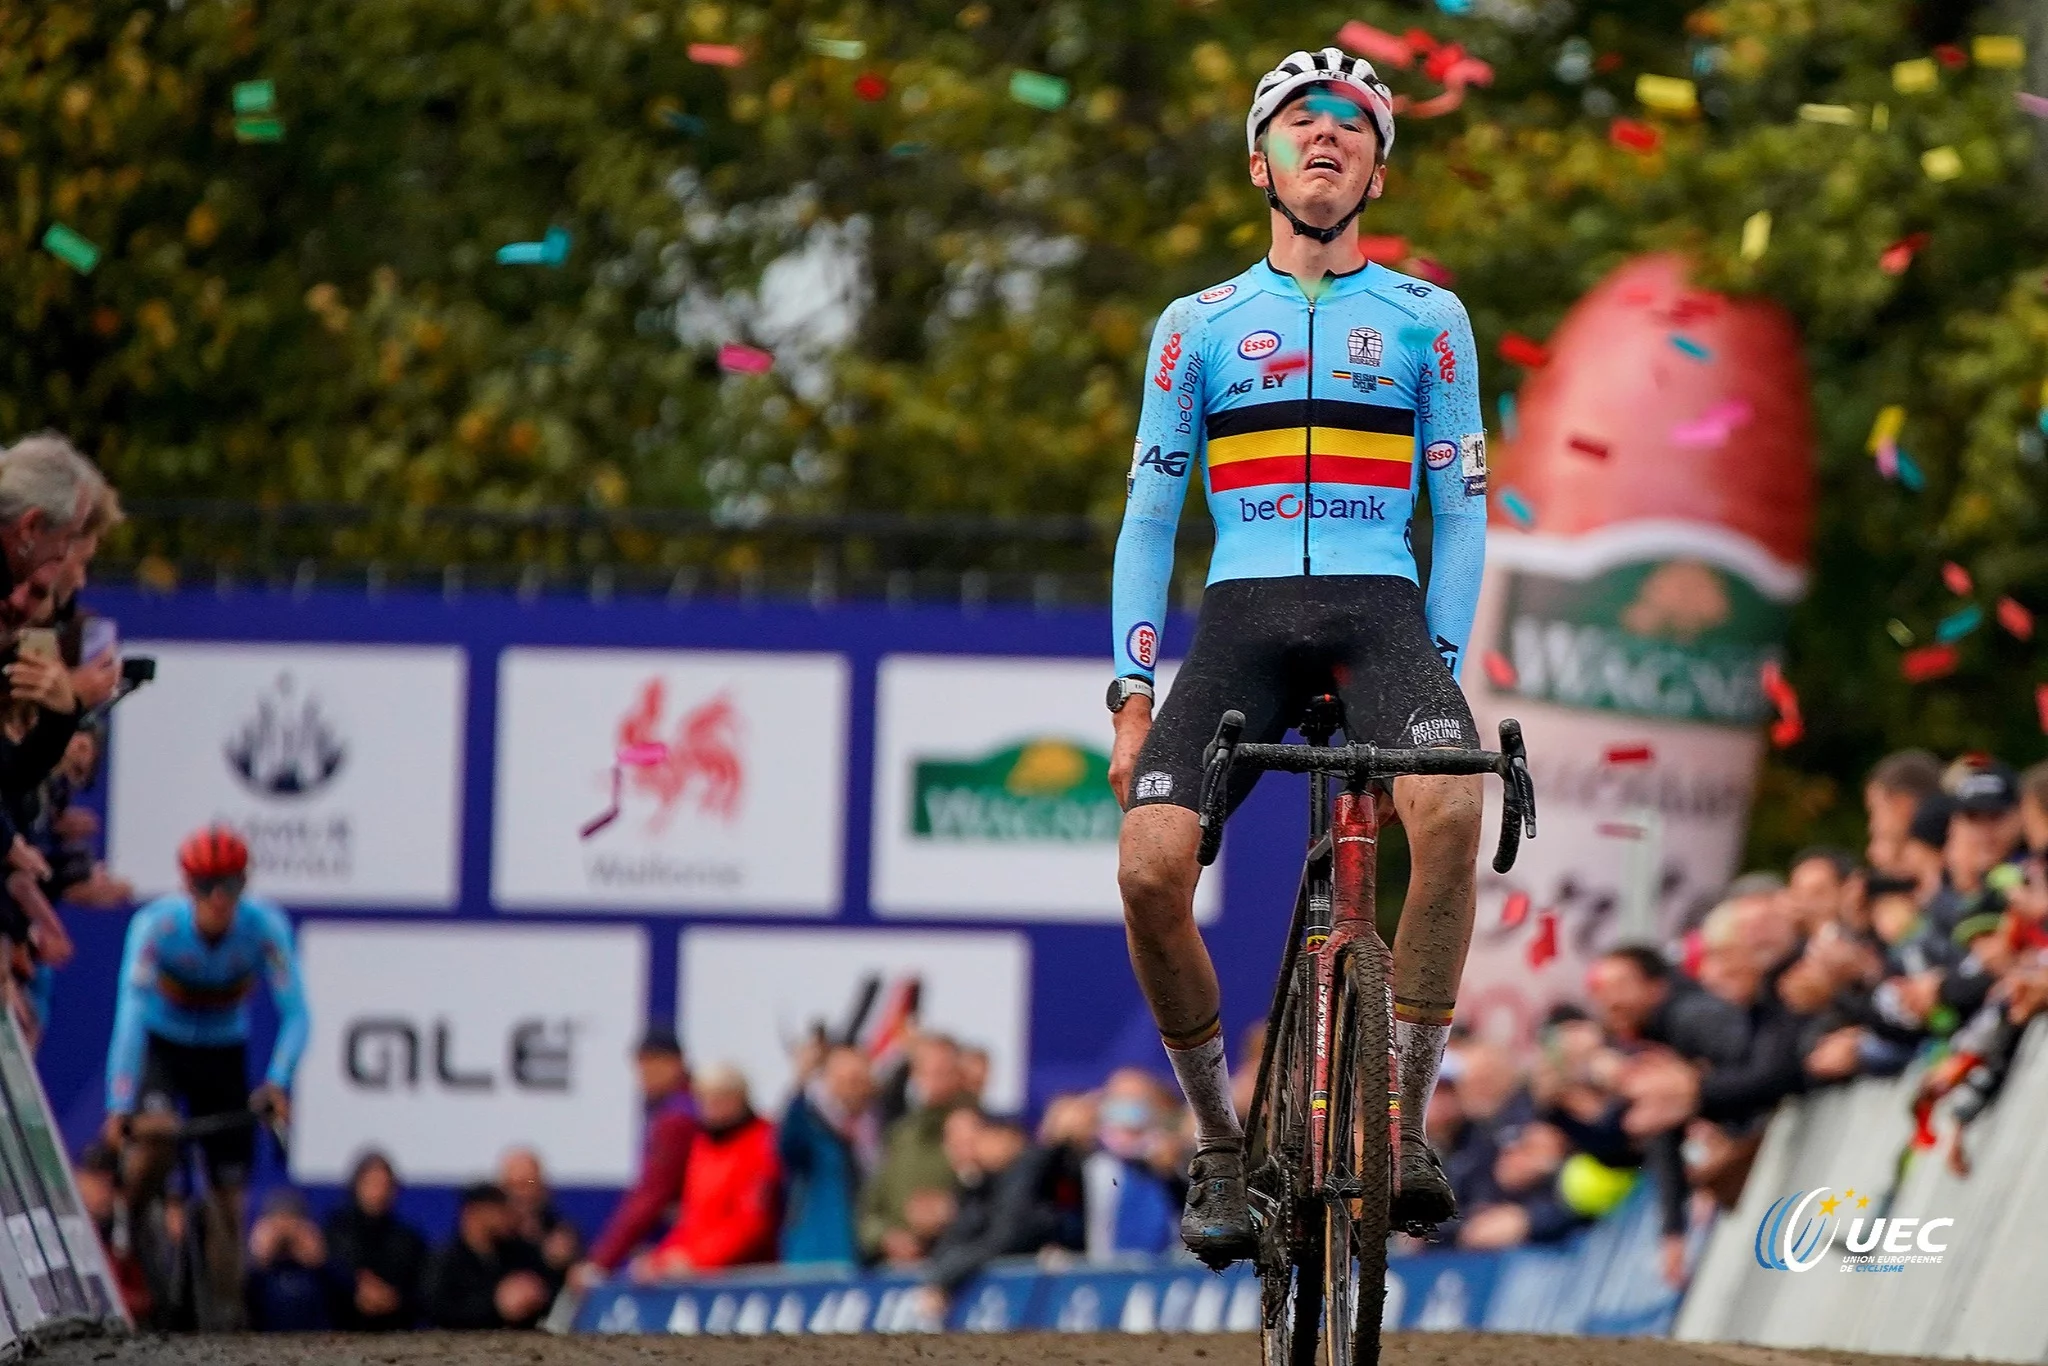 Эмиль Верстринге — новый чемпион Европы по велокроссу среди гонщиков до 23 лет